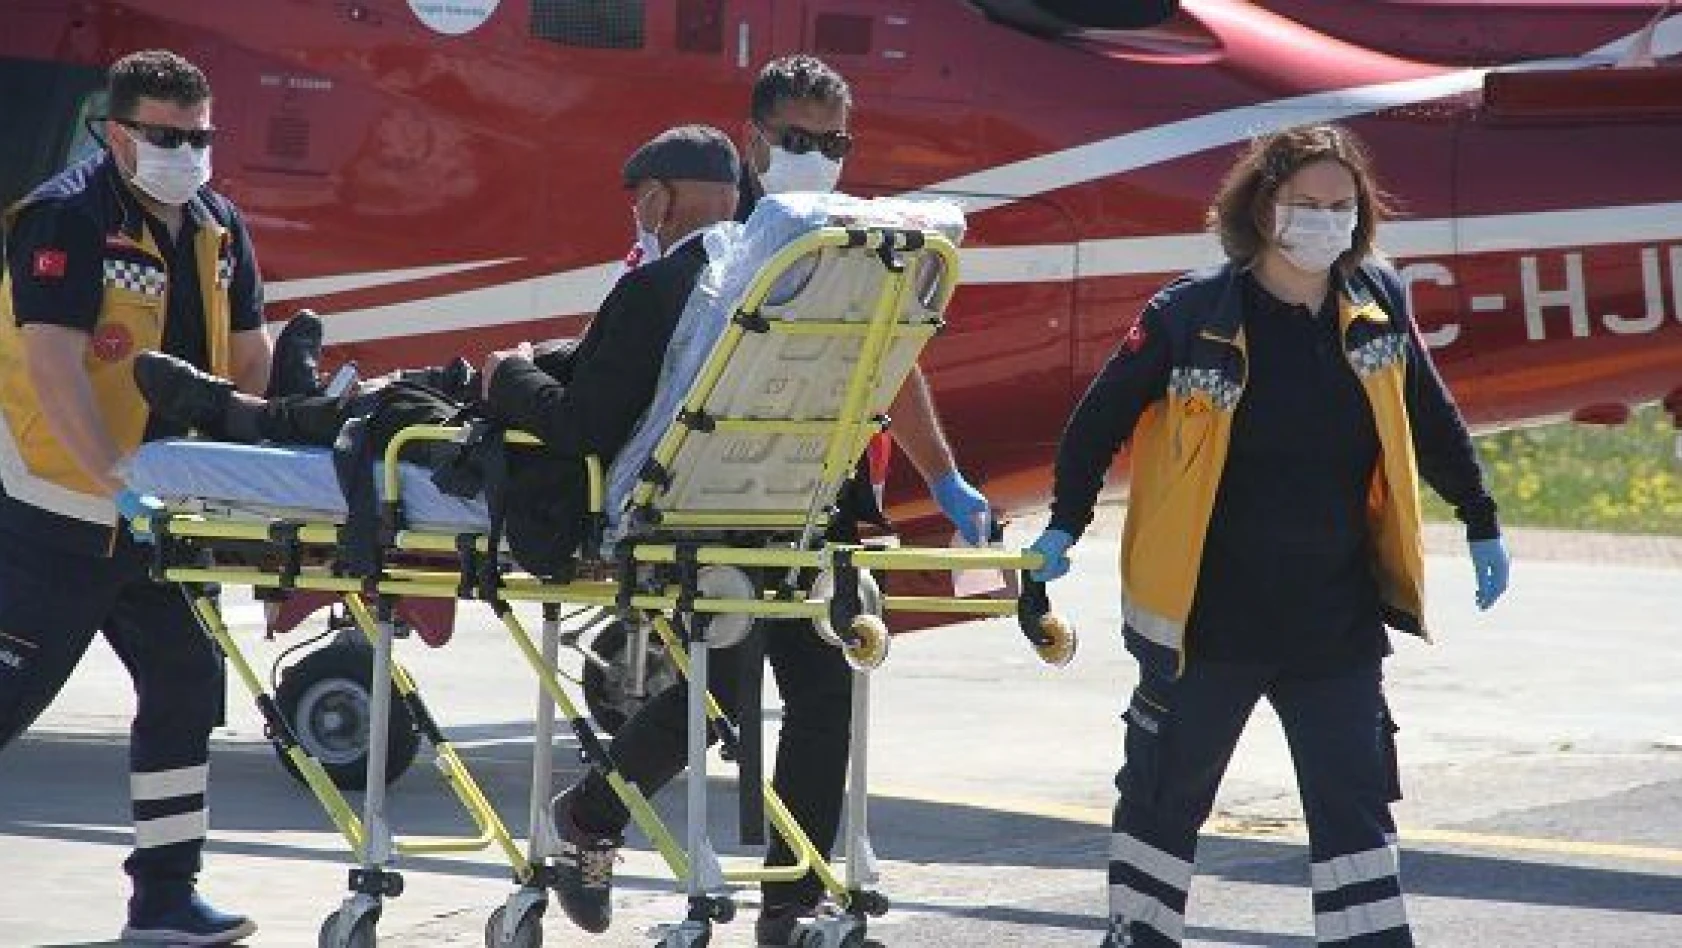 Böbrek büyümesi rahatsızlığı olan kişi ambulans helikopterle Kayseri'ye getirildi